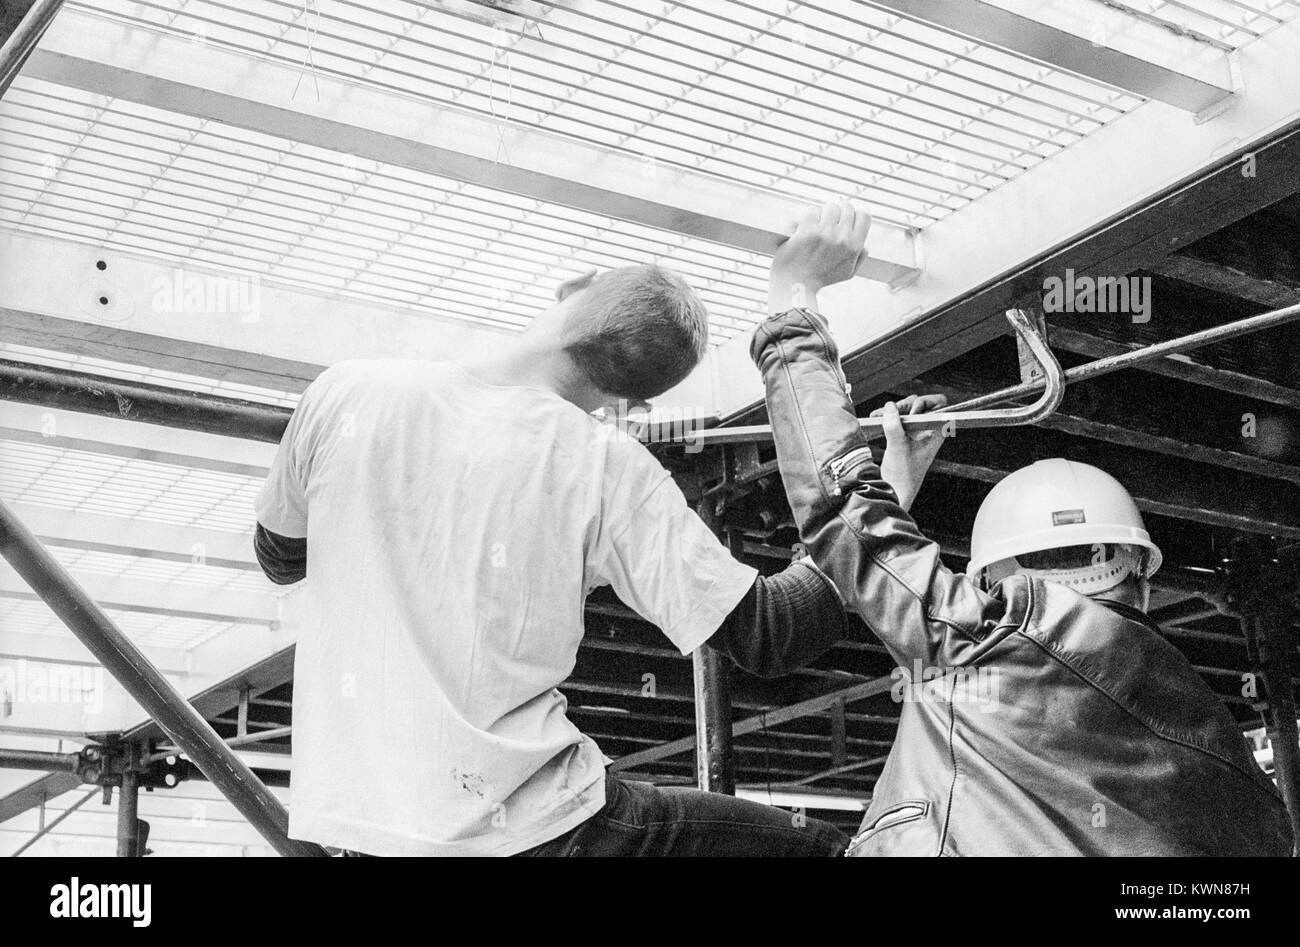 Edwin Shirley équipage Mise en scène la construction d'un stade de Wembley pour la tournée de concerts de Jean Michel Jarre, Europe en concert, Londres, 26 - 28 août 1993 Banque D'Images